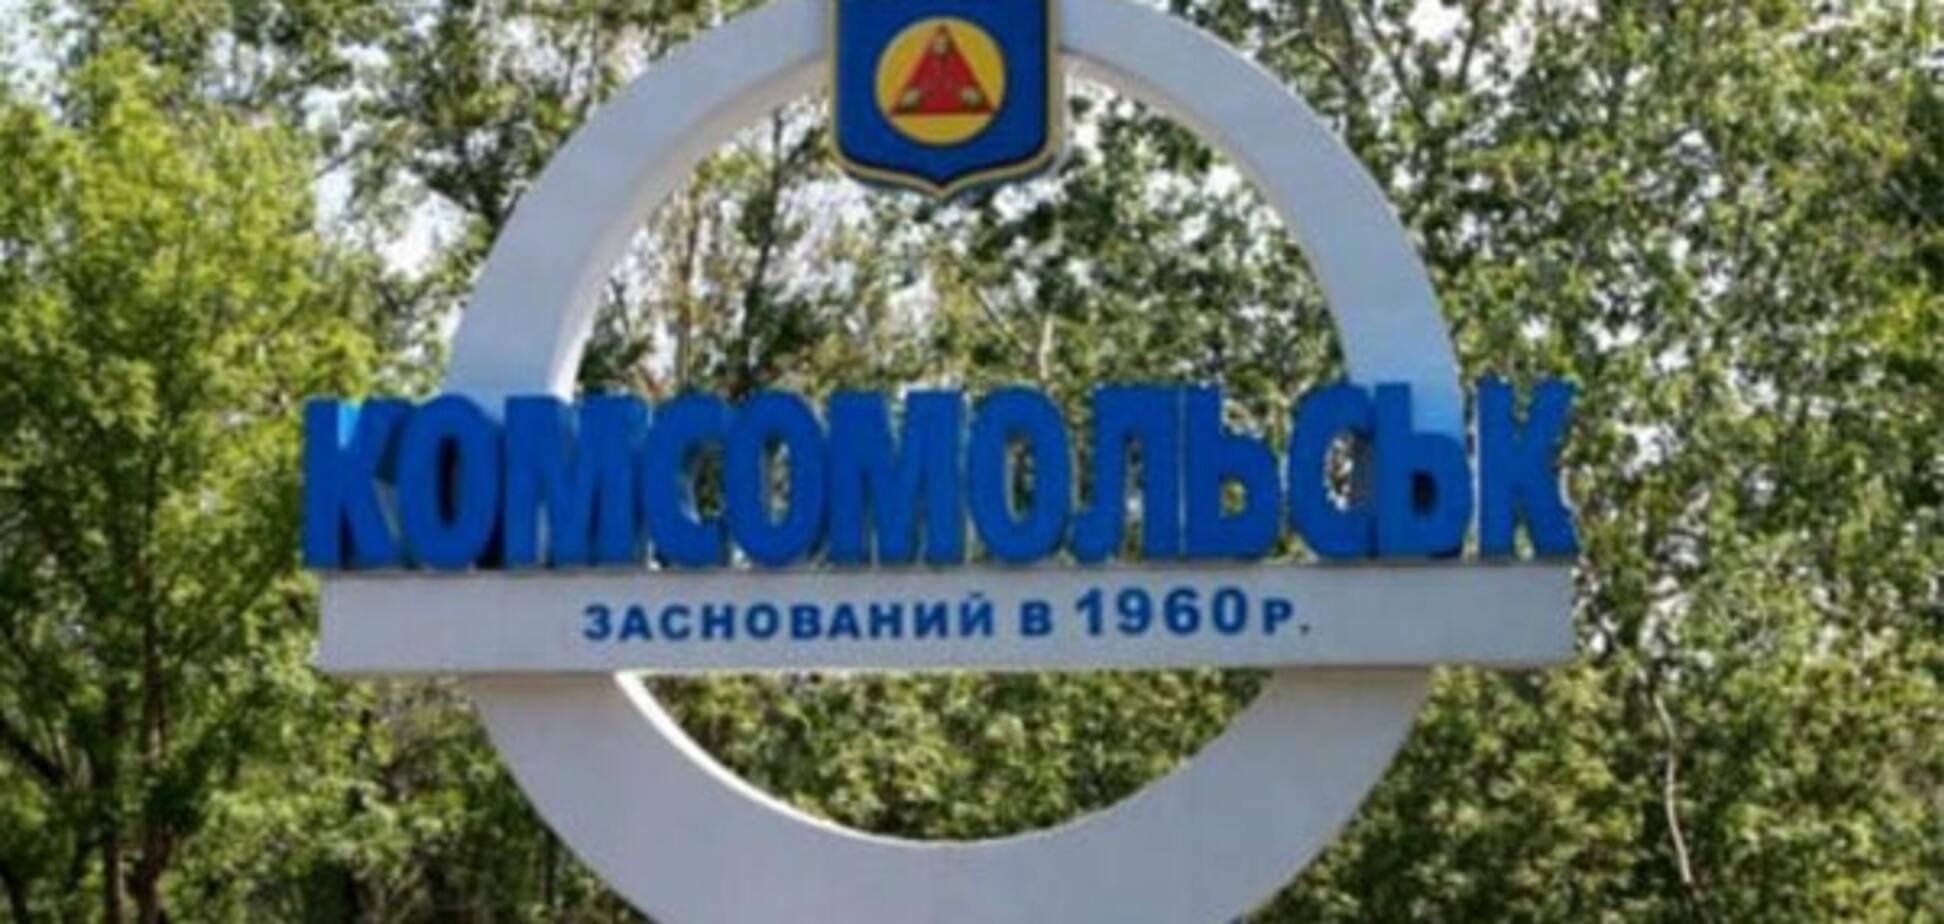 Занимательная декоммунизация: Комсомольск предложили переименовать в Комсомольск